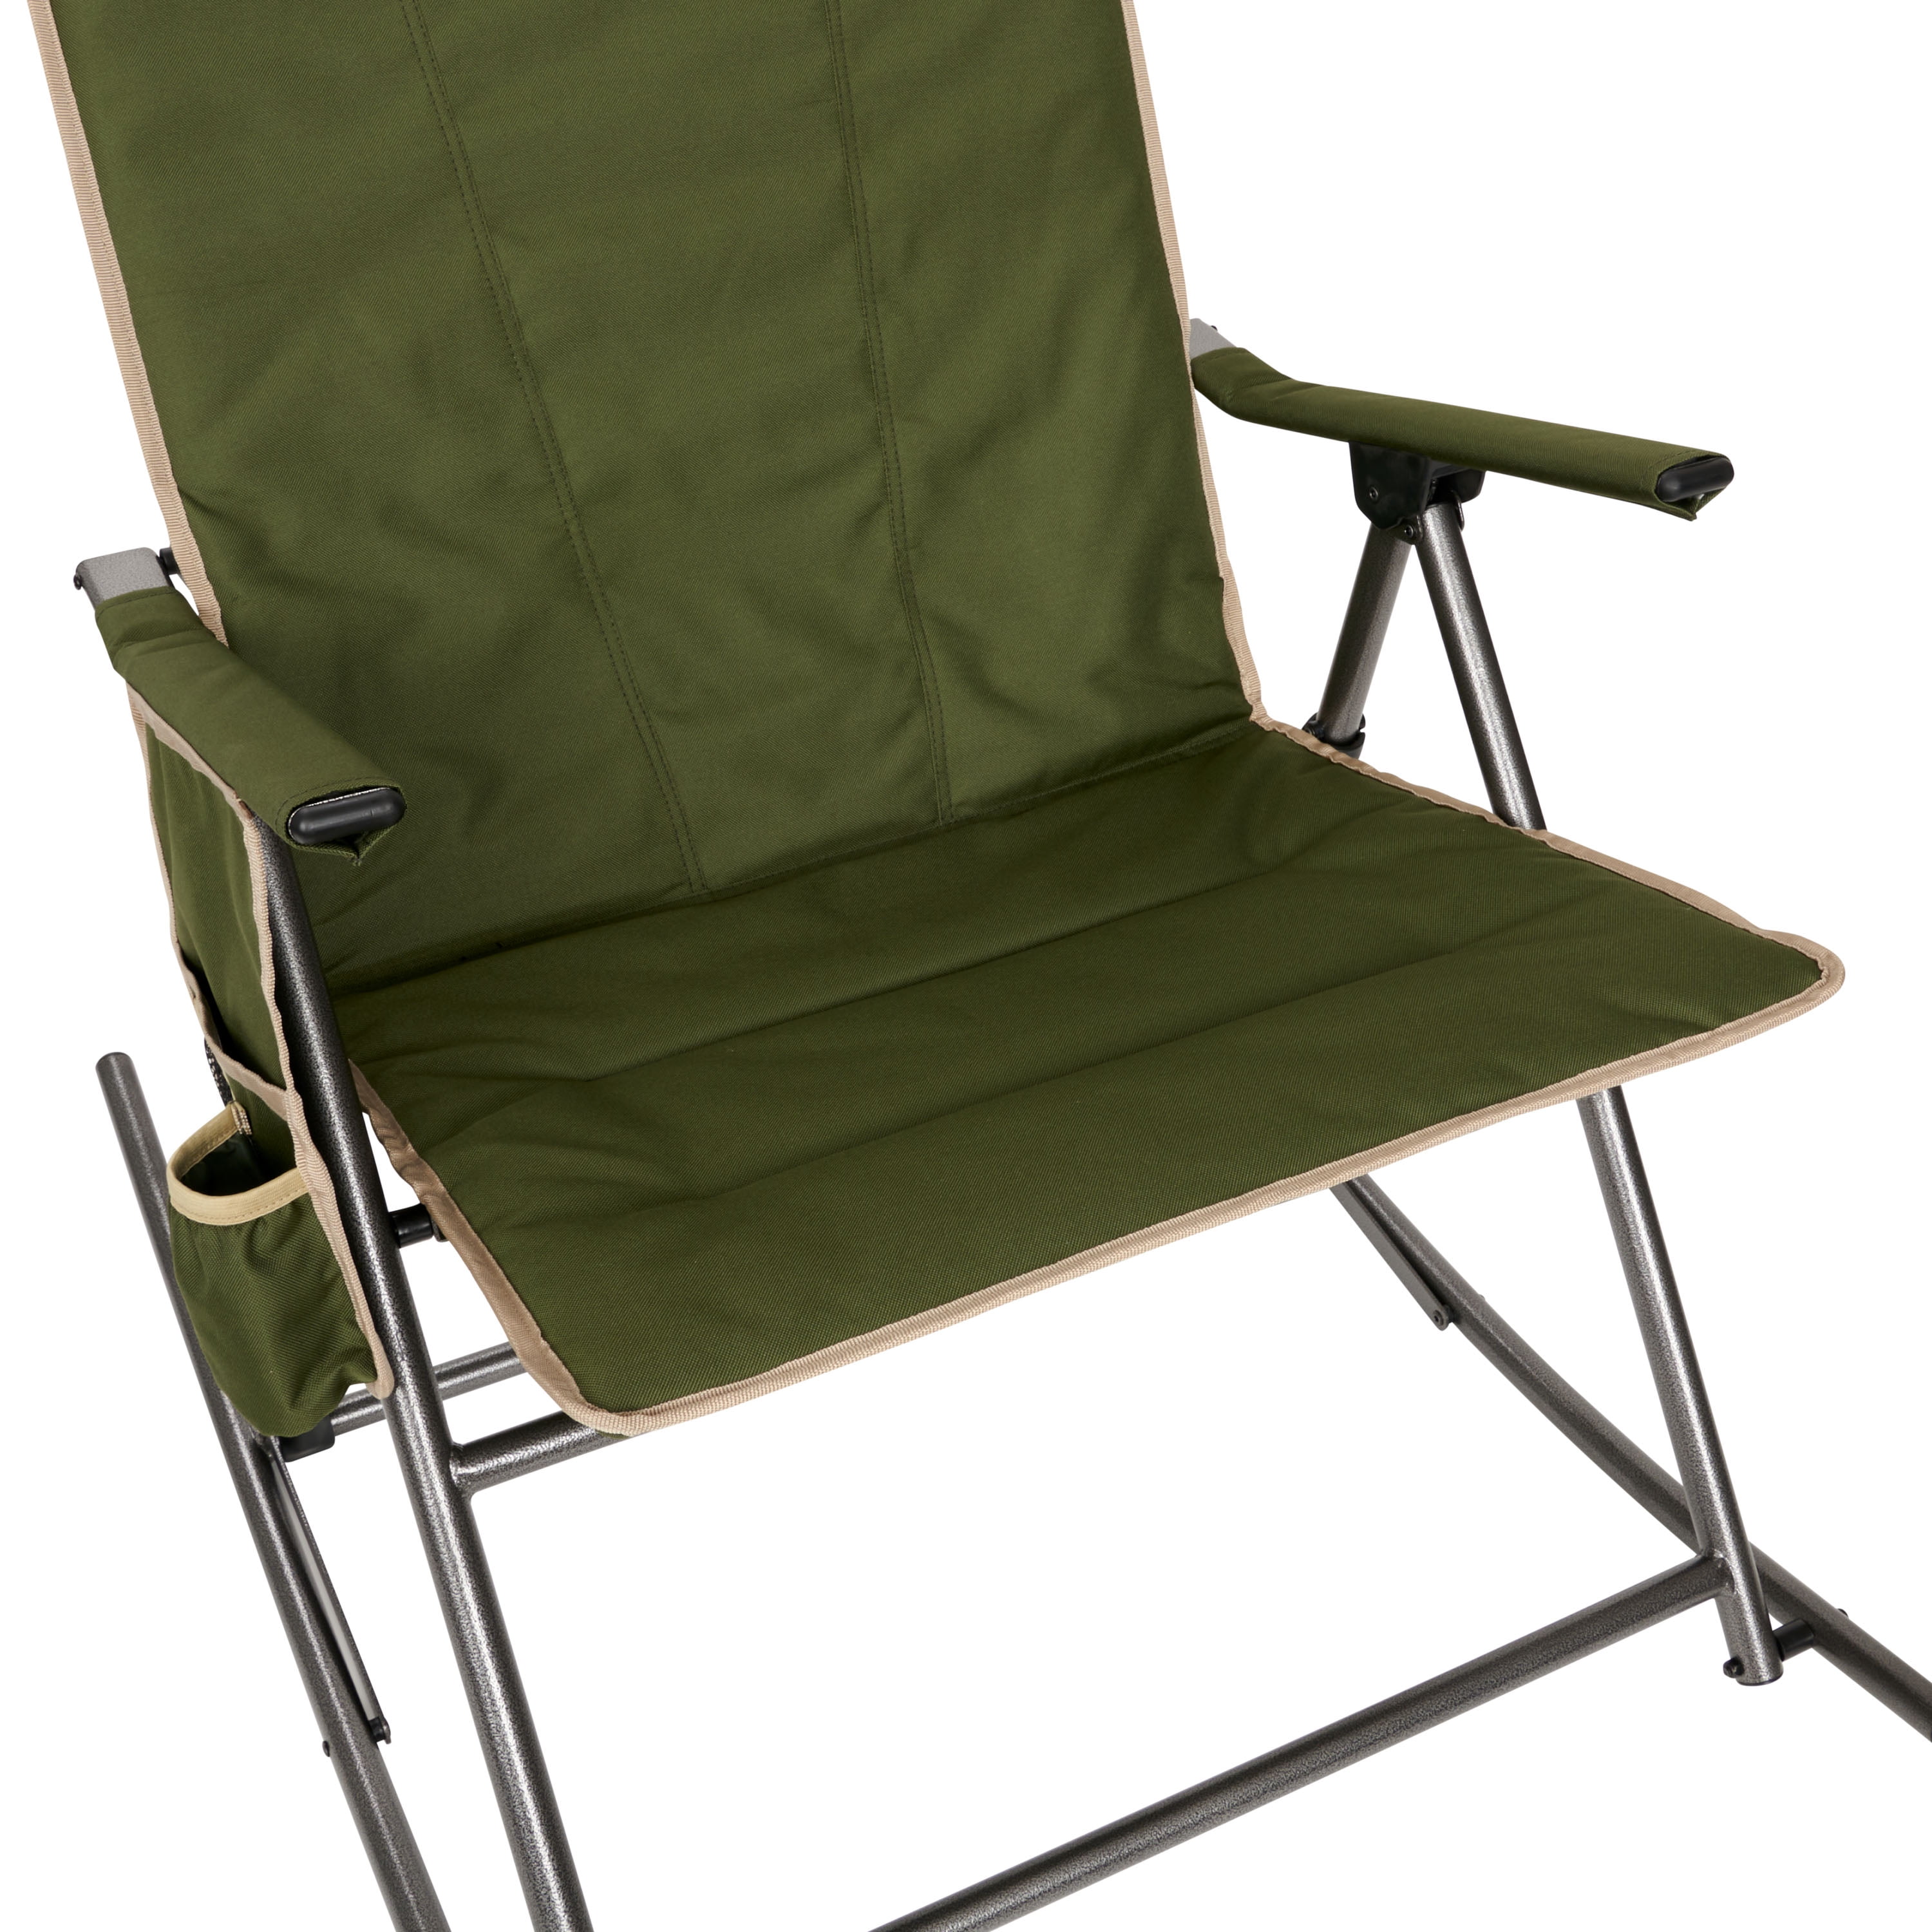 Slumberjack Moose Meadow Rocker Adult Camping Chair, Green 